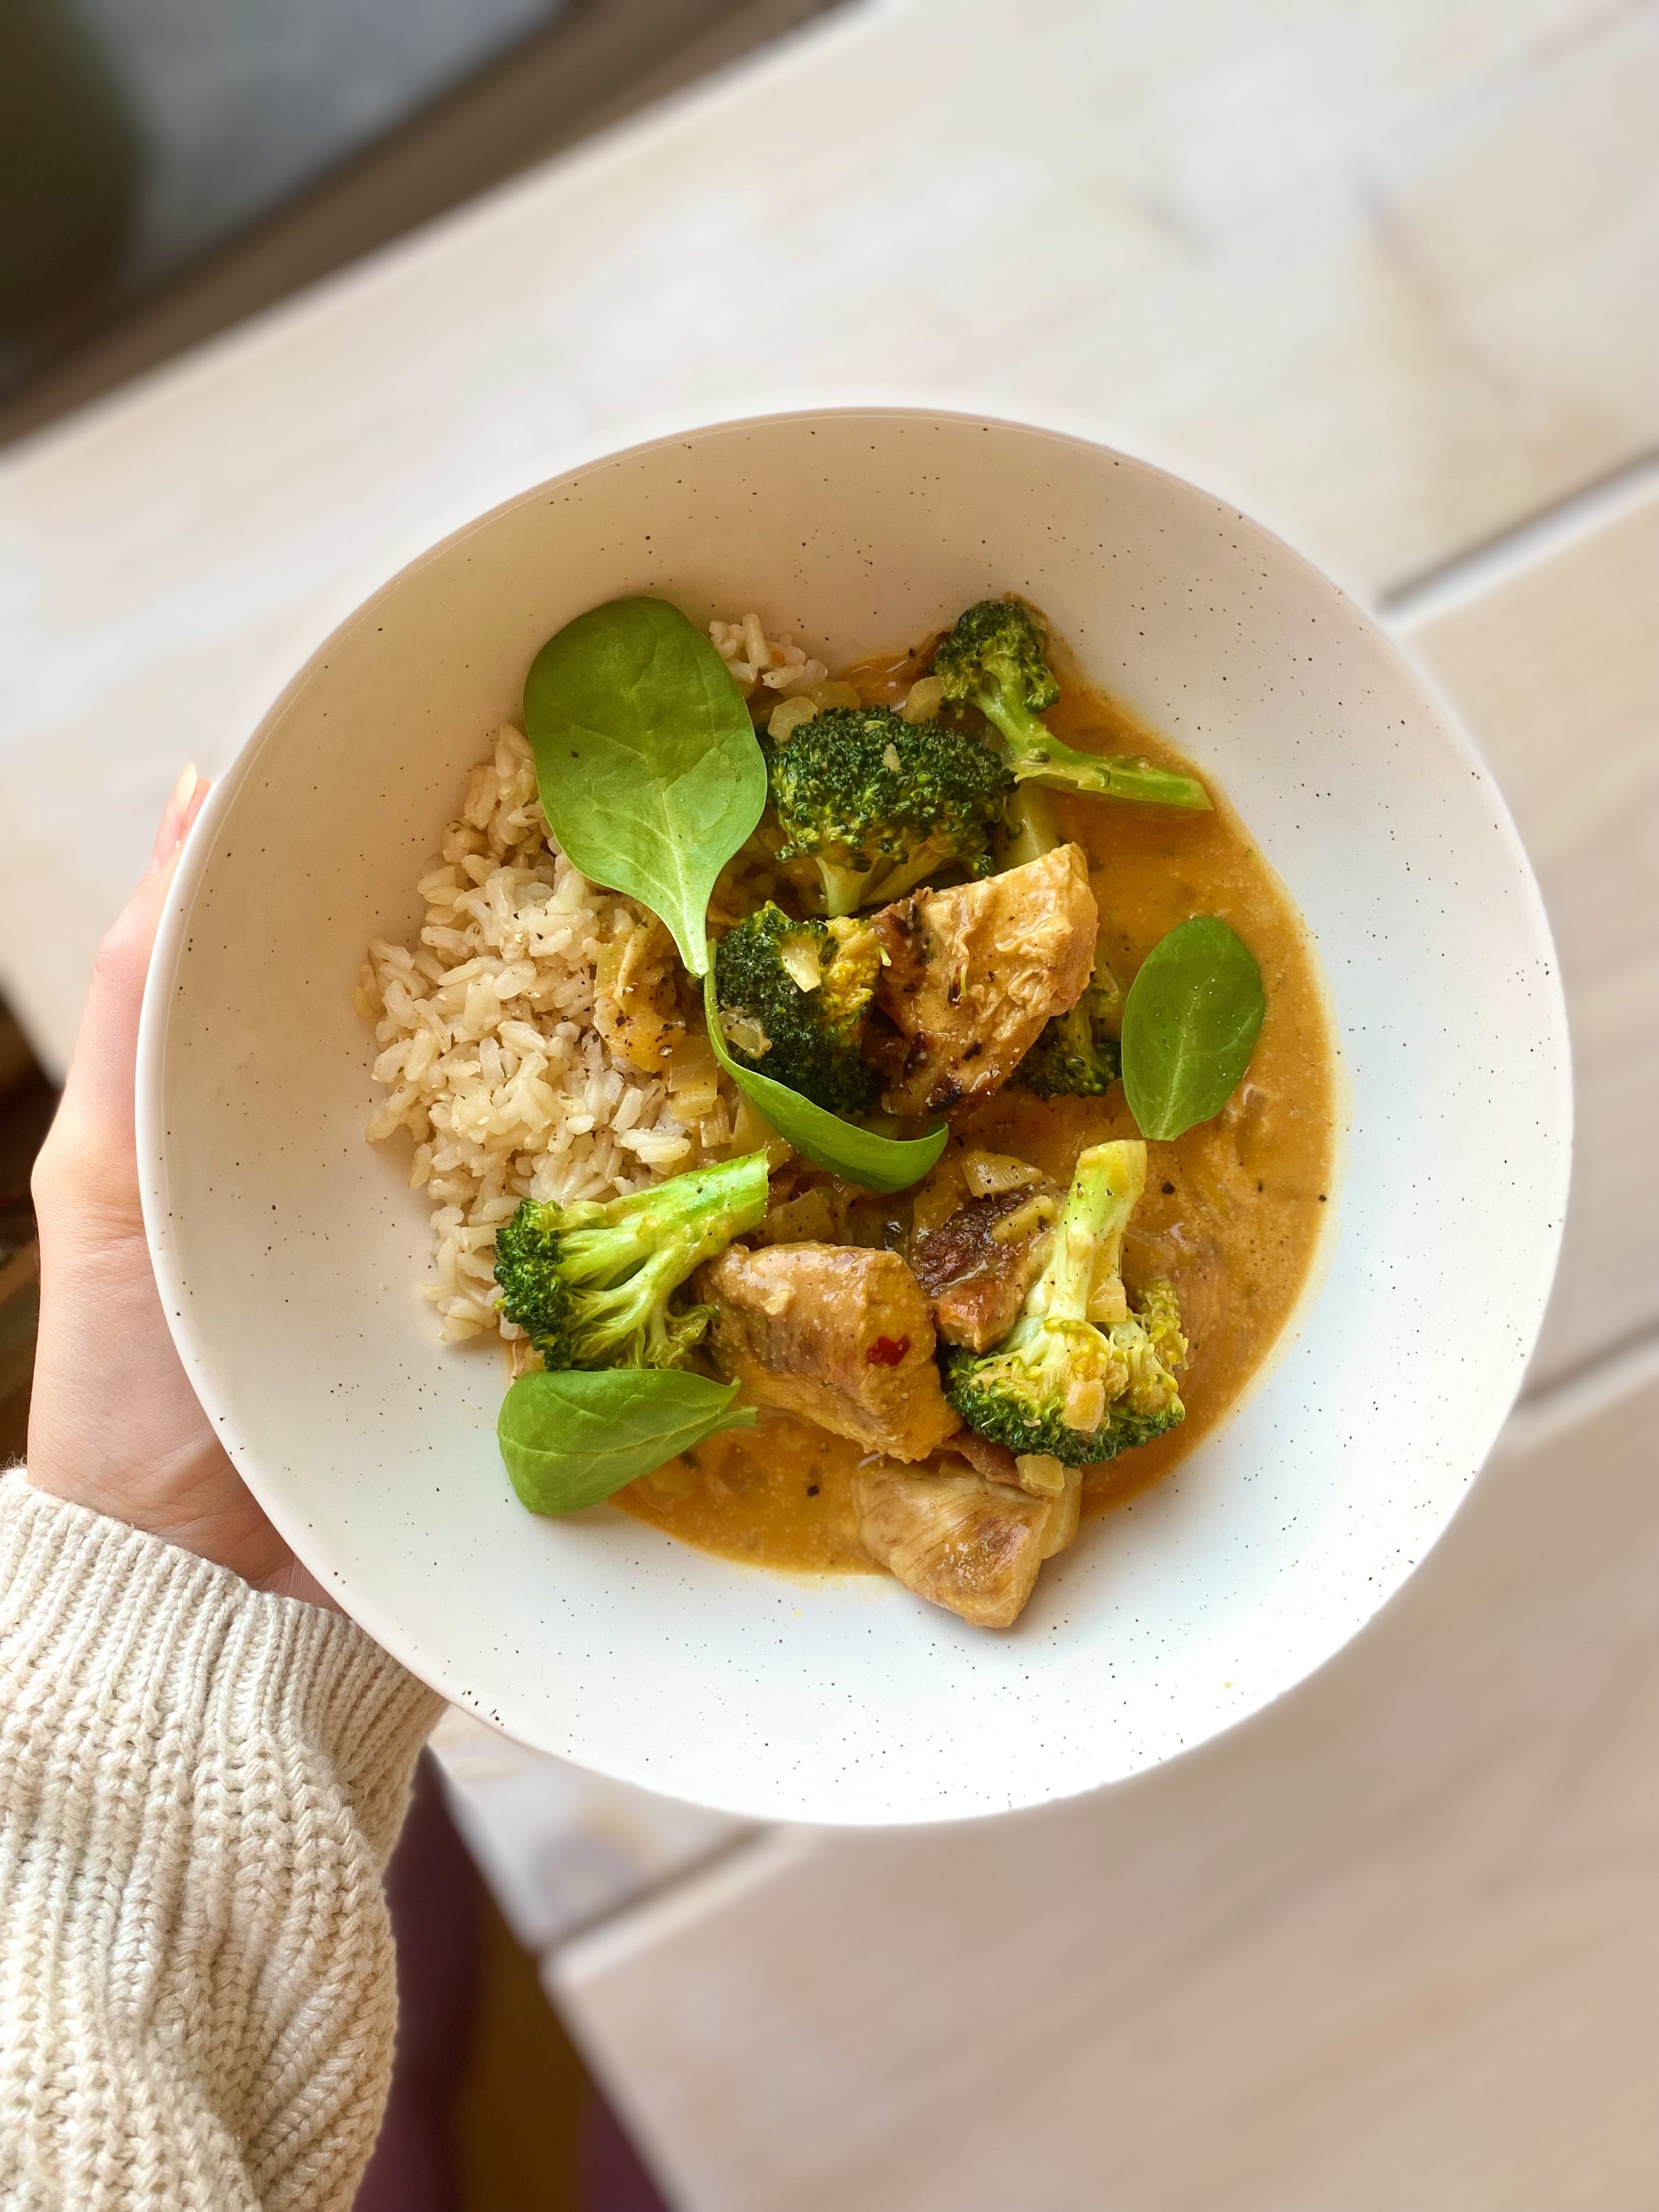 Värmande kycklinggryta med kokosmjölk, curry och broccoli - perfekt till vintern